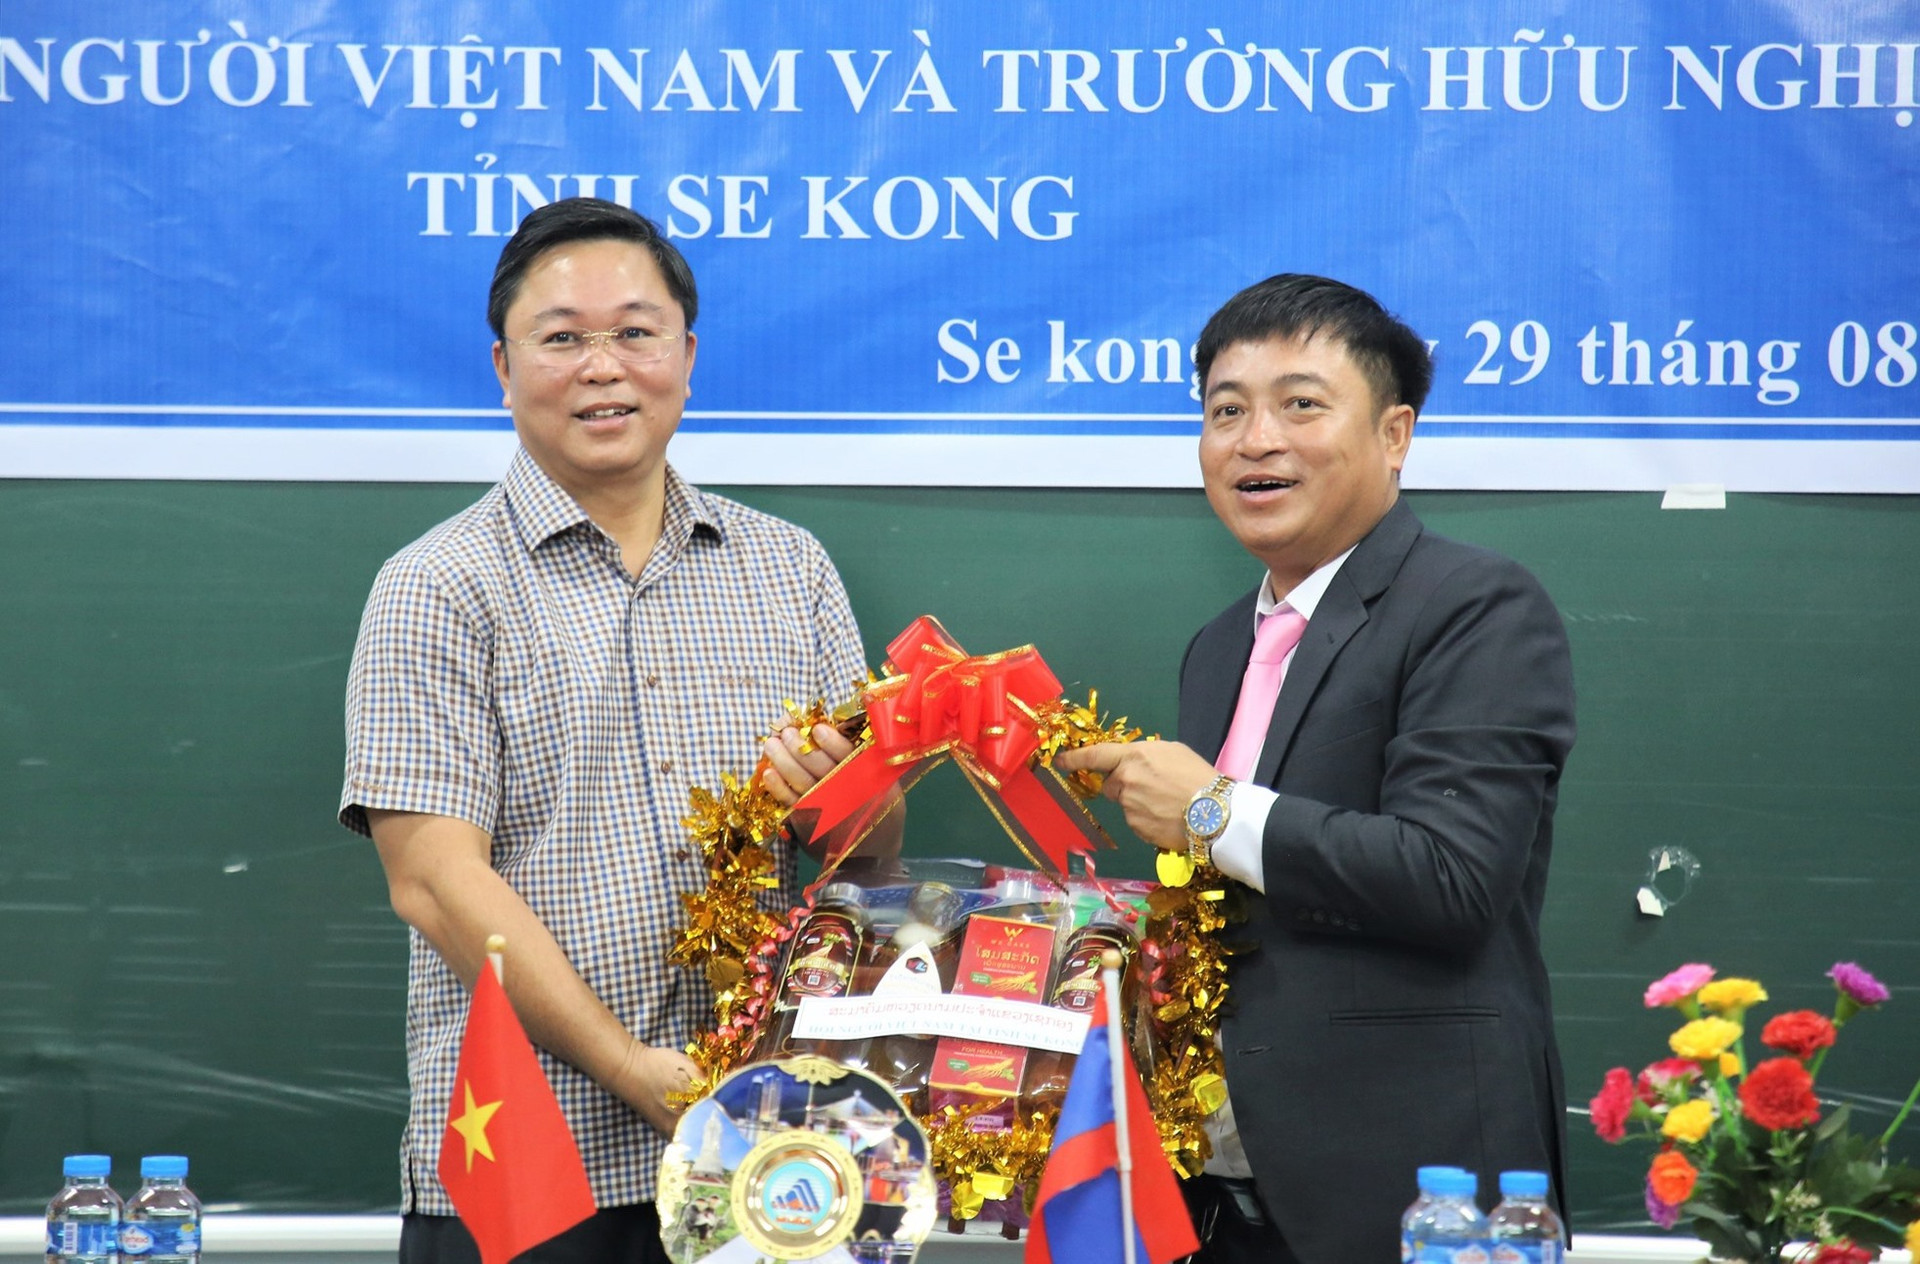 Chủ tịch UBND tỉnh Lê Trí Thanh trao quà hỗ trợ Trường Hữu nghị Lào - Việt tỉnh Sê Kông. Ảnh: A.N